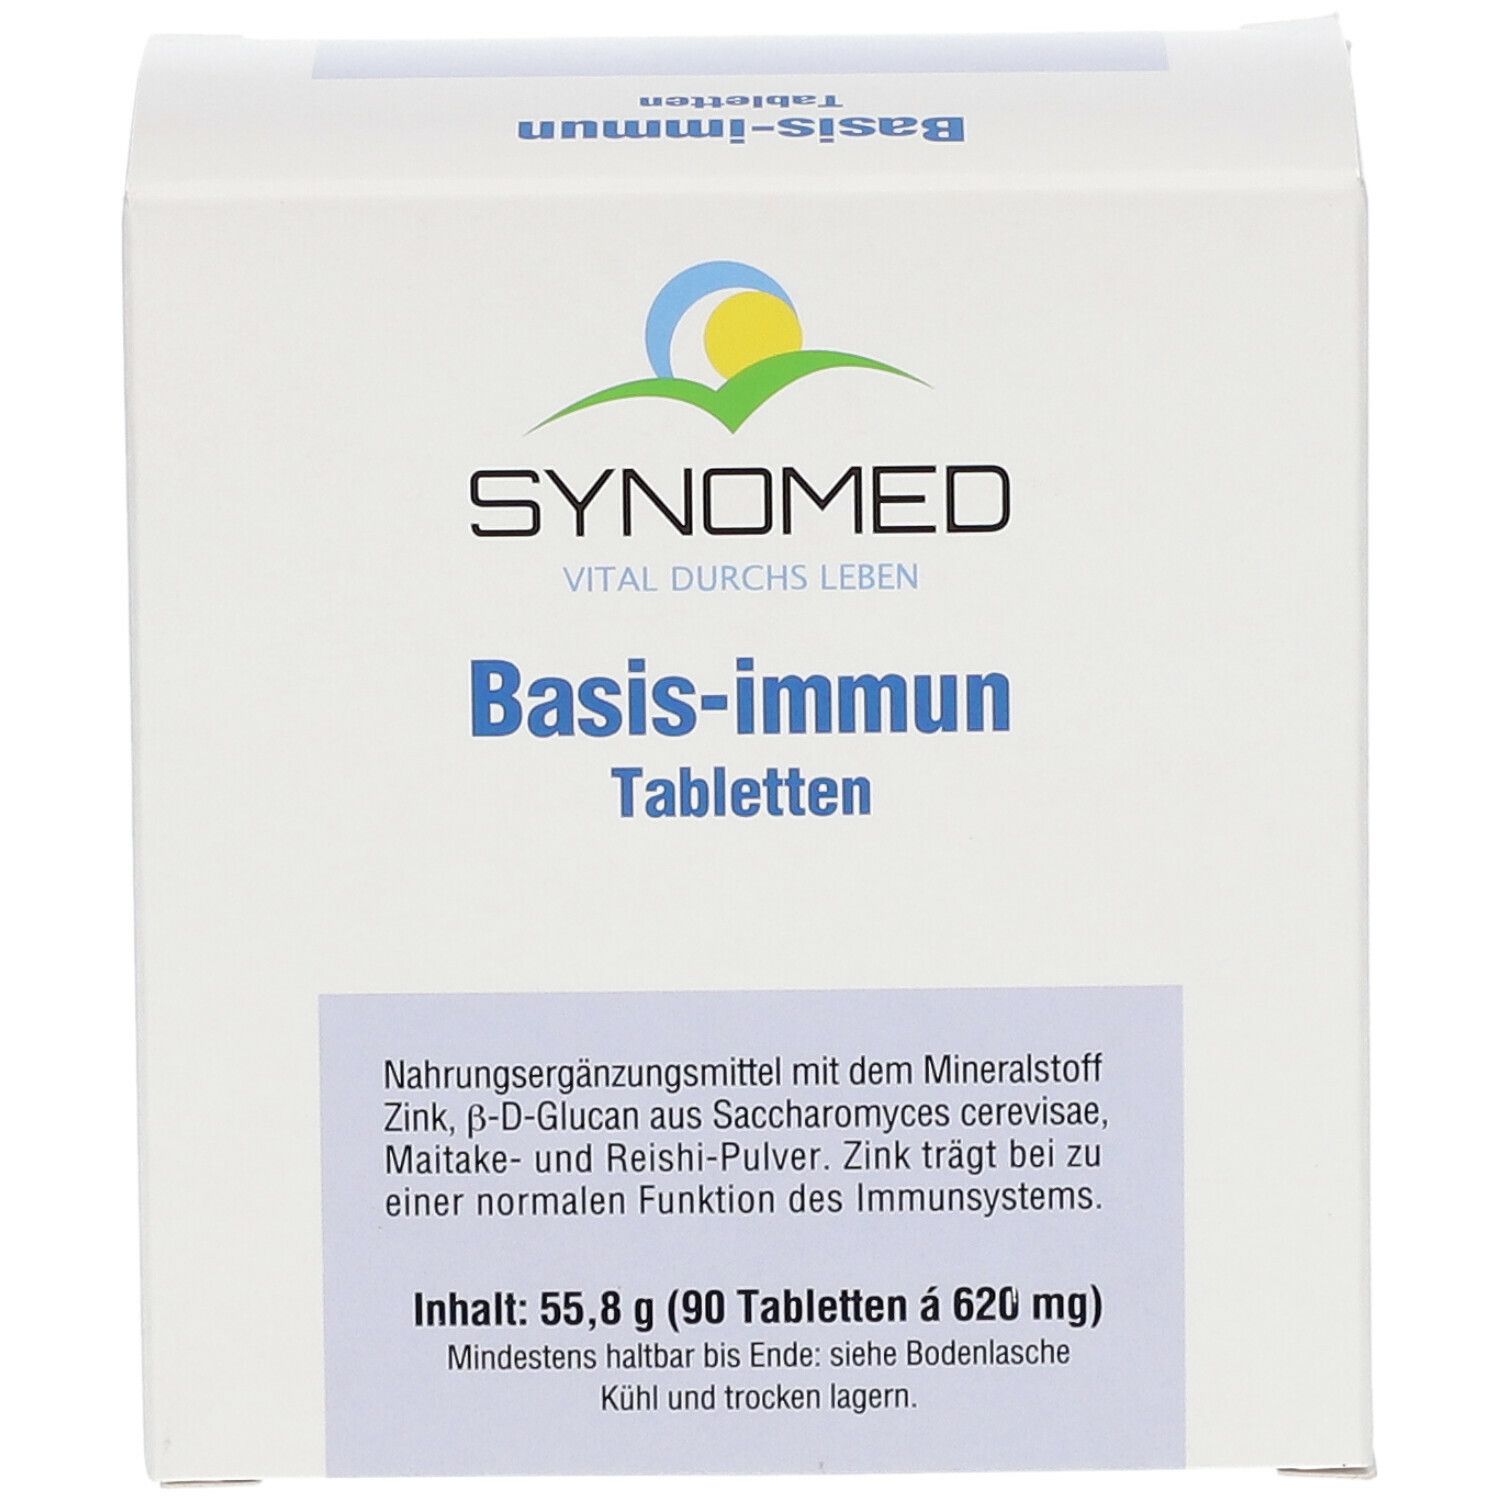 SYNOMED Basis-immun